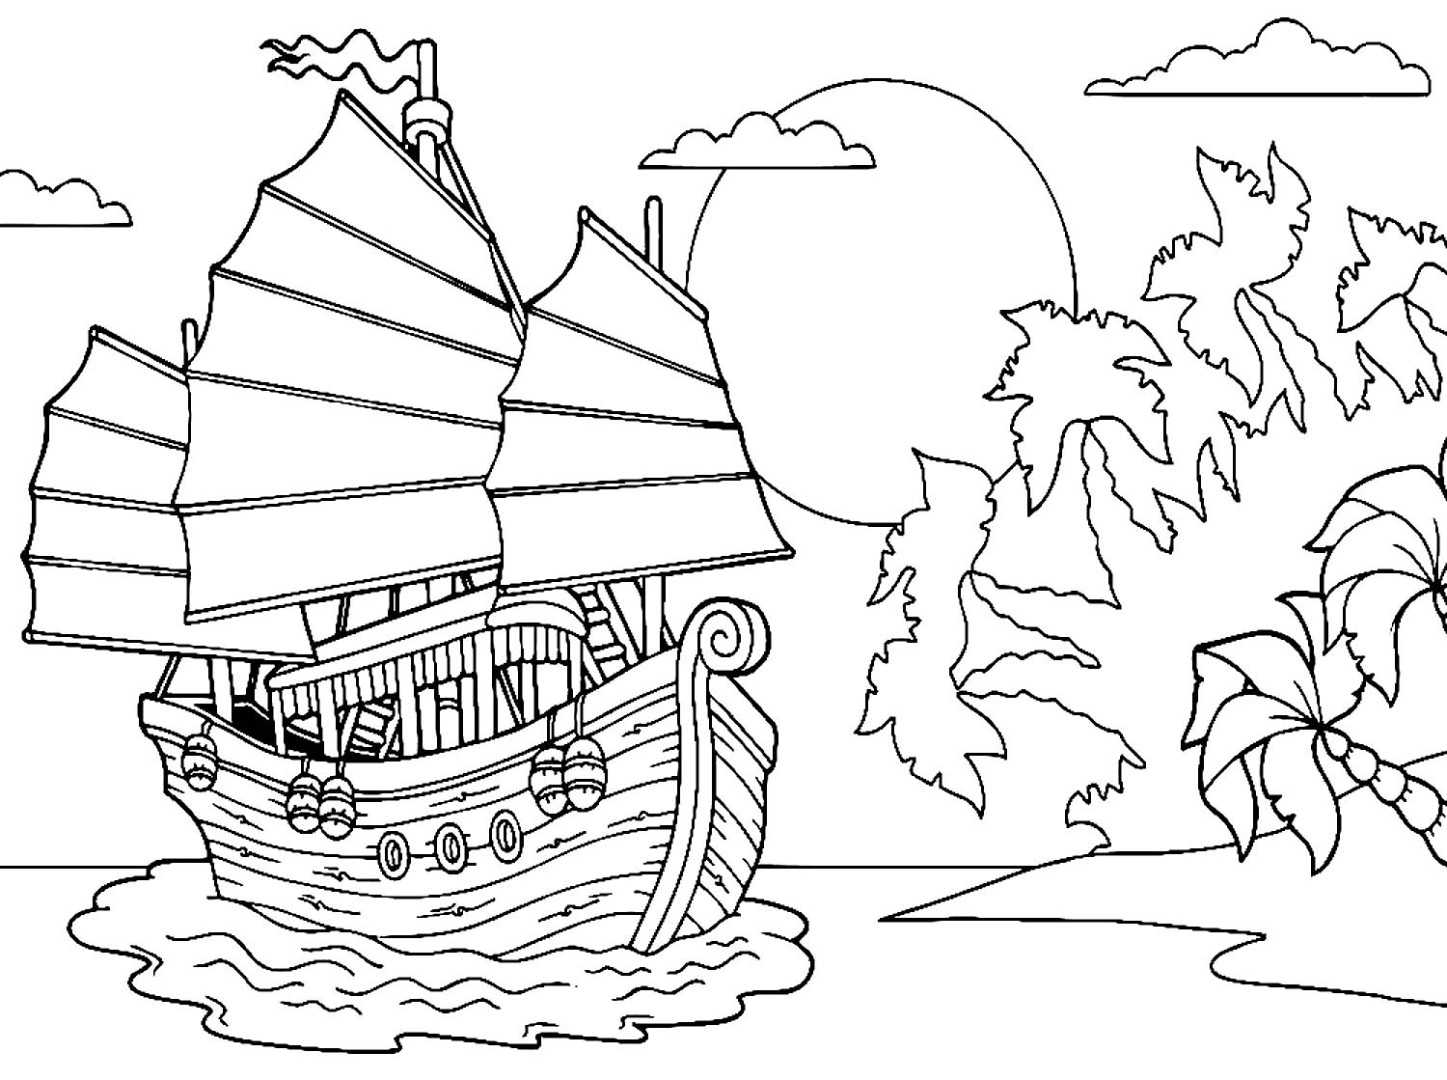 Раскраски Корабли Раскраски лодки, парусники, подводные лодки, военные корабли, лайнеры и пр Раскраски для мальчиков 3-10 лет разного уровня сложности